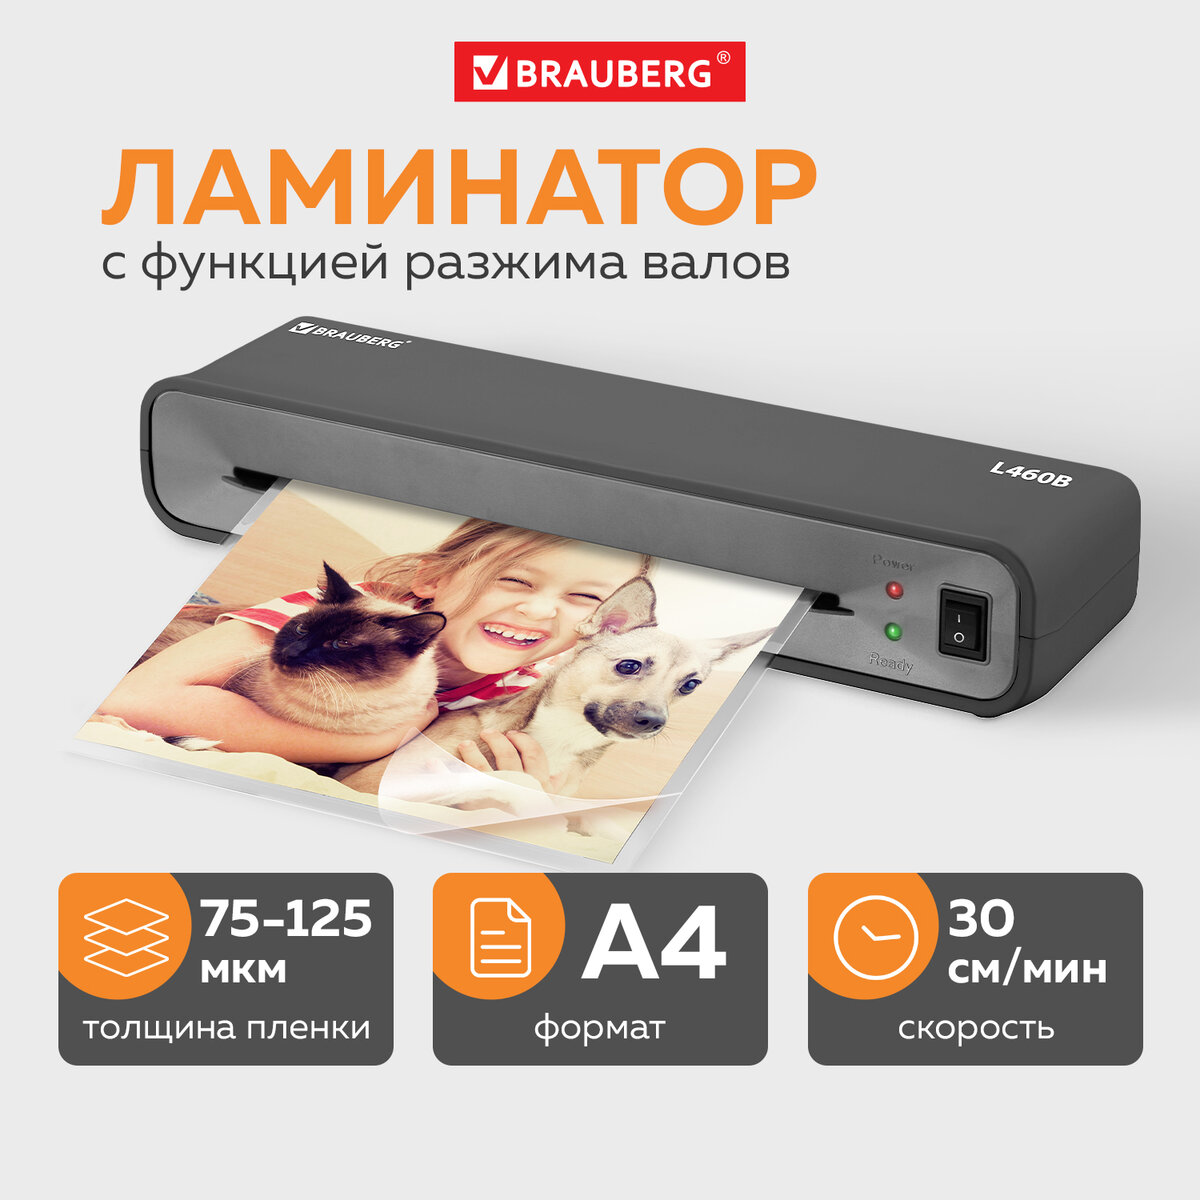 Ламинатор "L460", А4, 75-125 мкм, купить в Москве, цены в интернет-магазинах на Мегамаркет